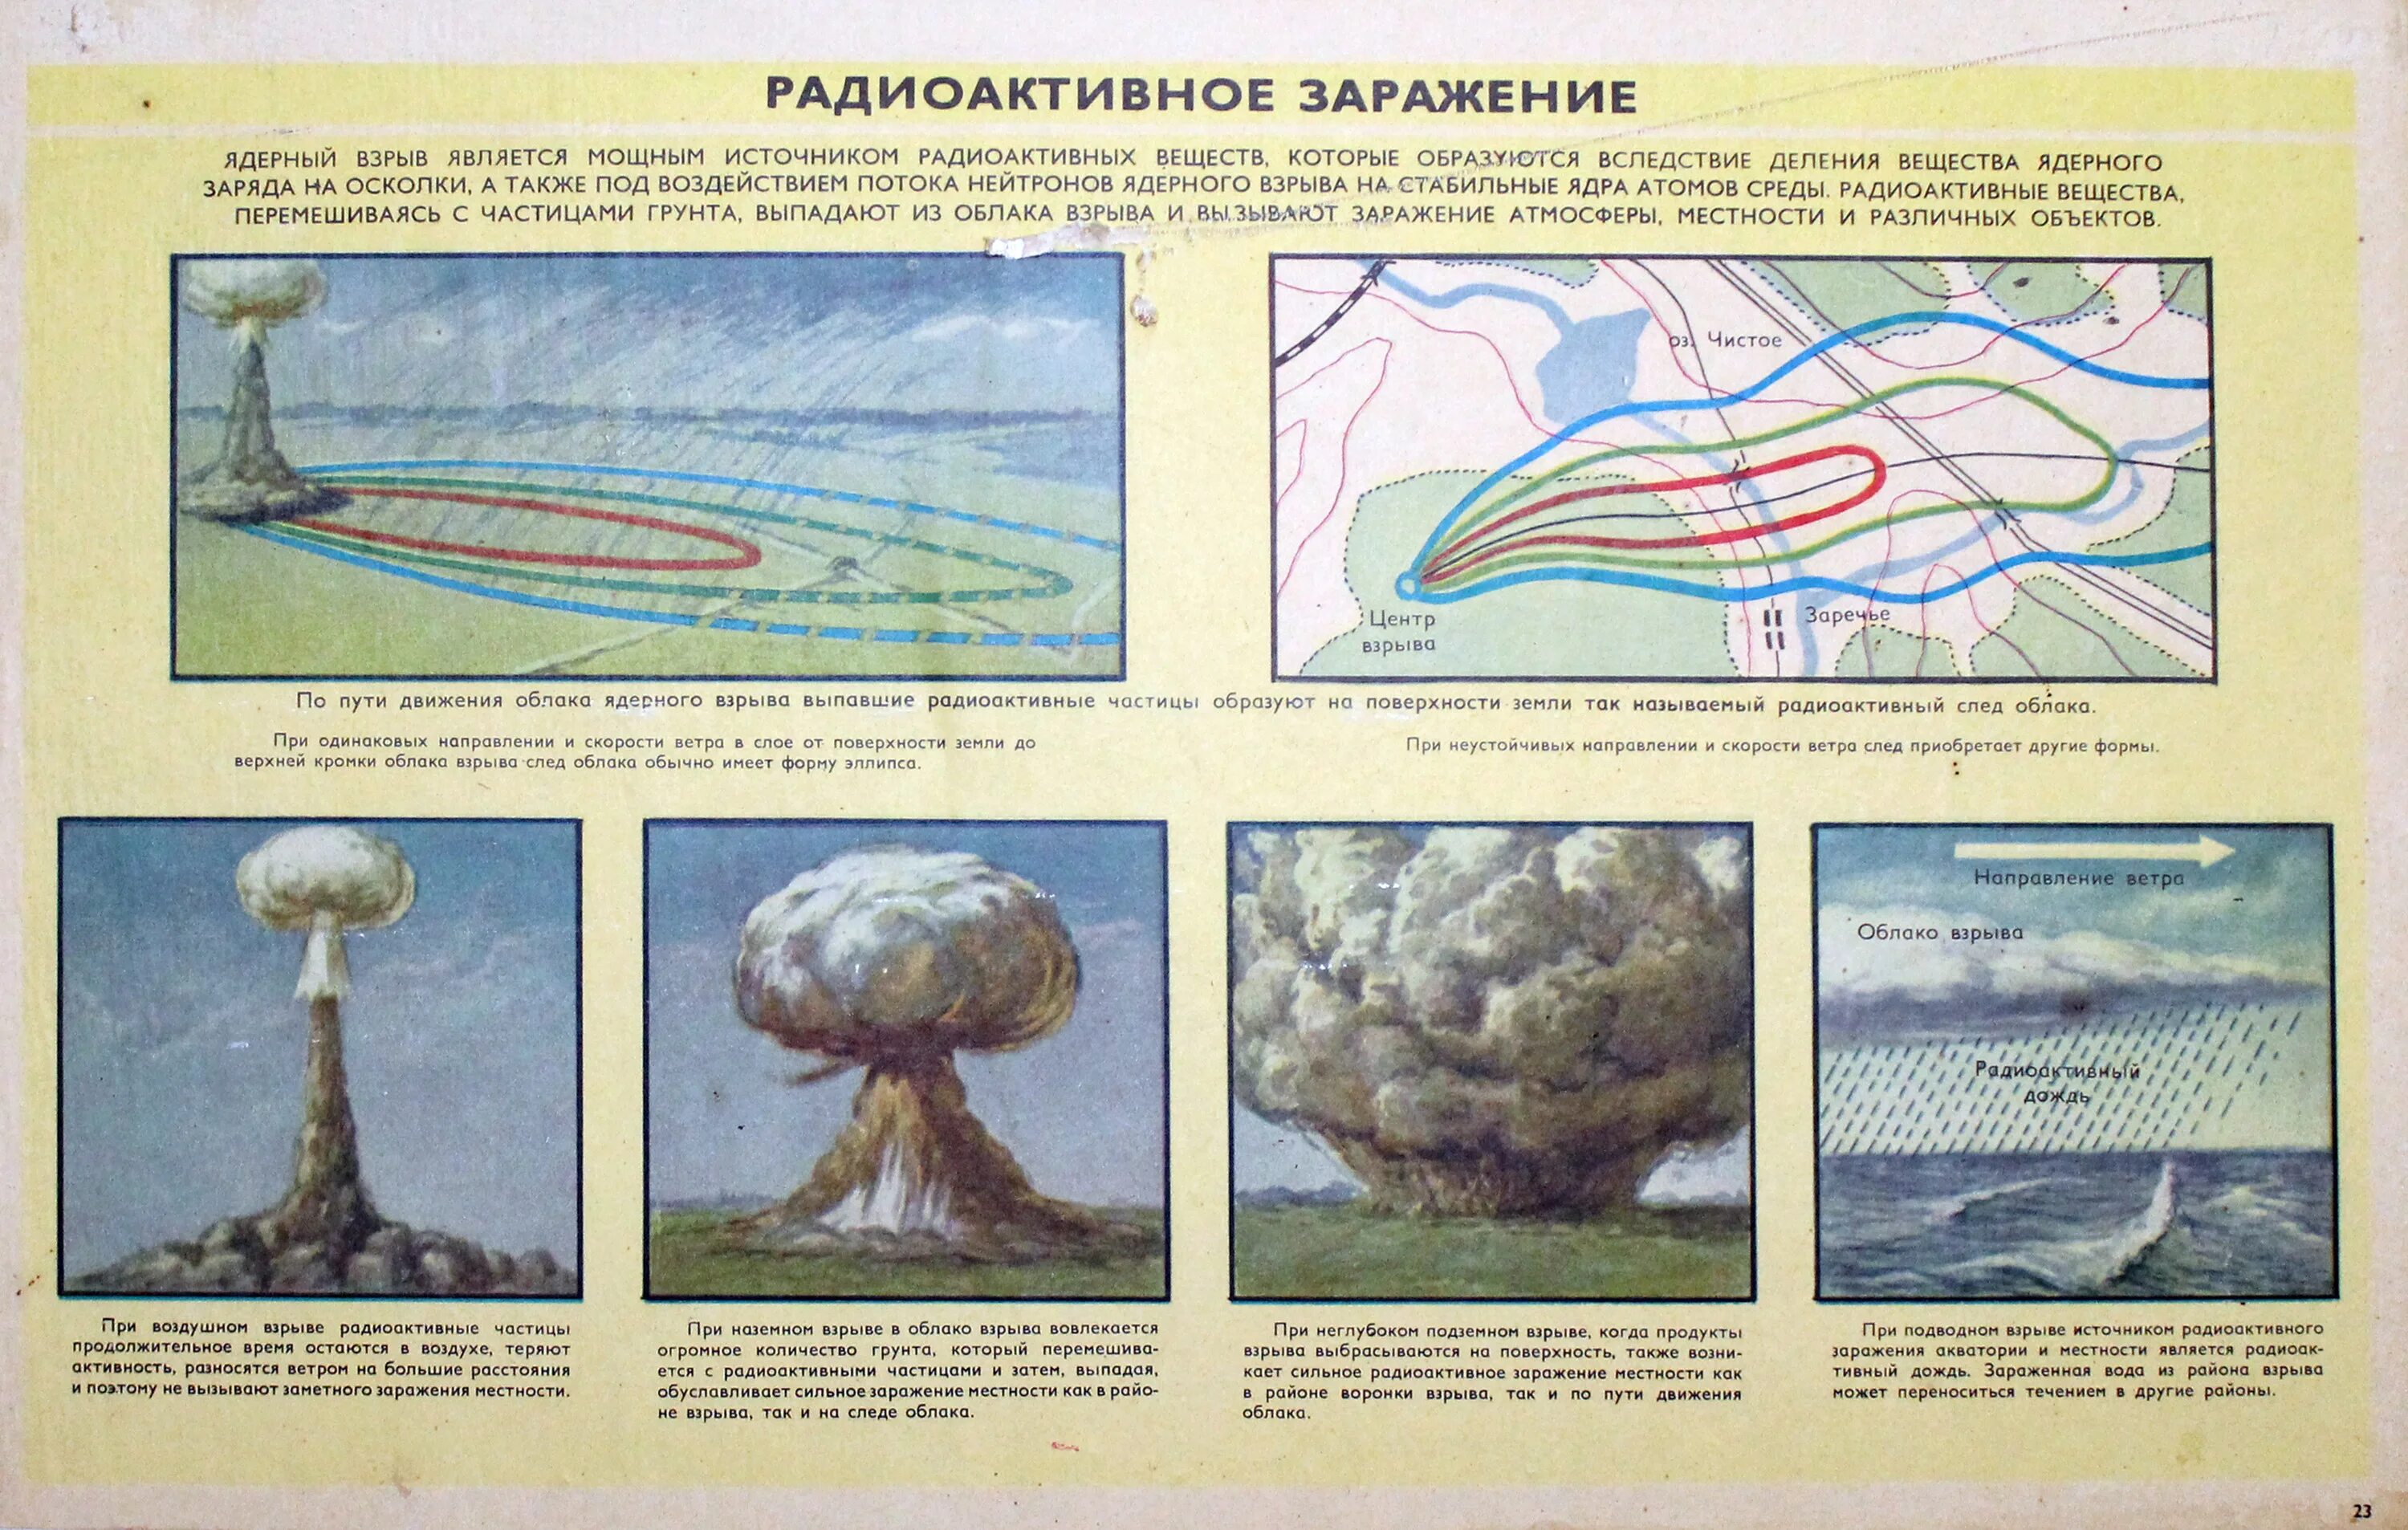 Таблица ядерных взрывов. Ядерное оружие схема действия взрыва. Схема наземного ядерного взрыва. Ядерное оружие радиоактивное заражение местности. Ядерный взрыв схема.